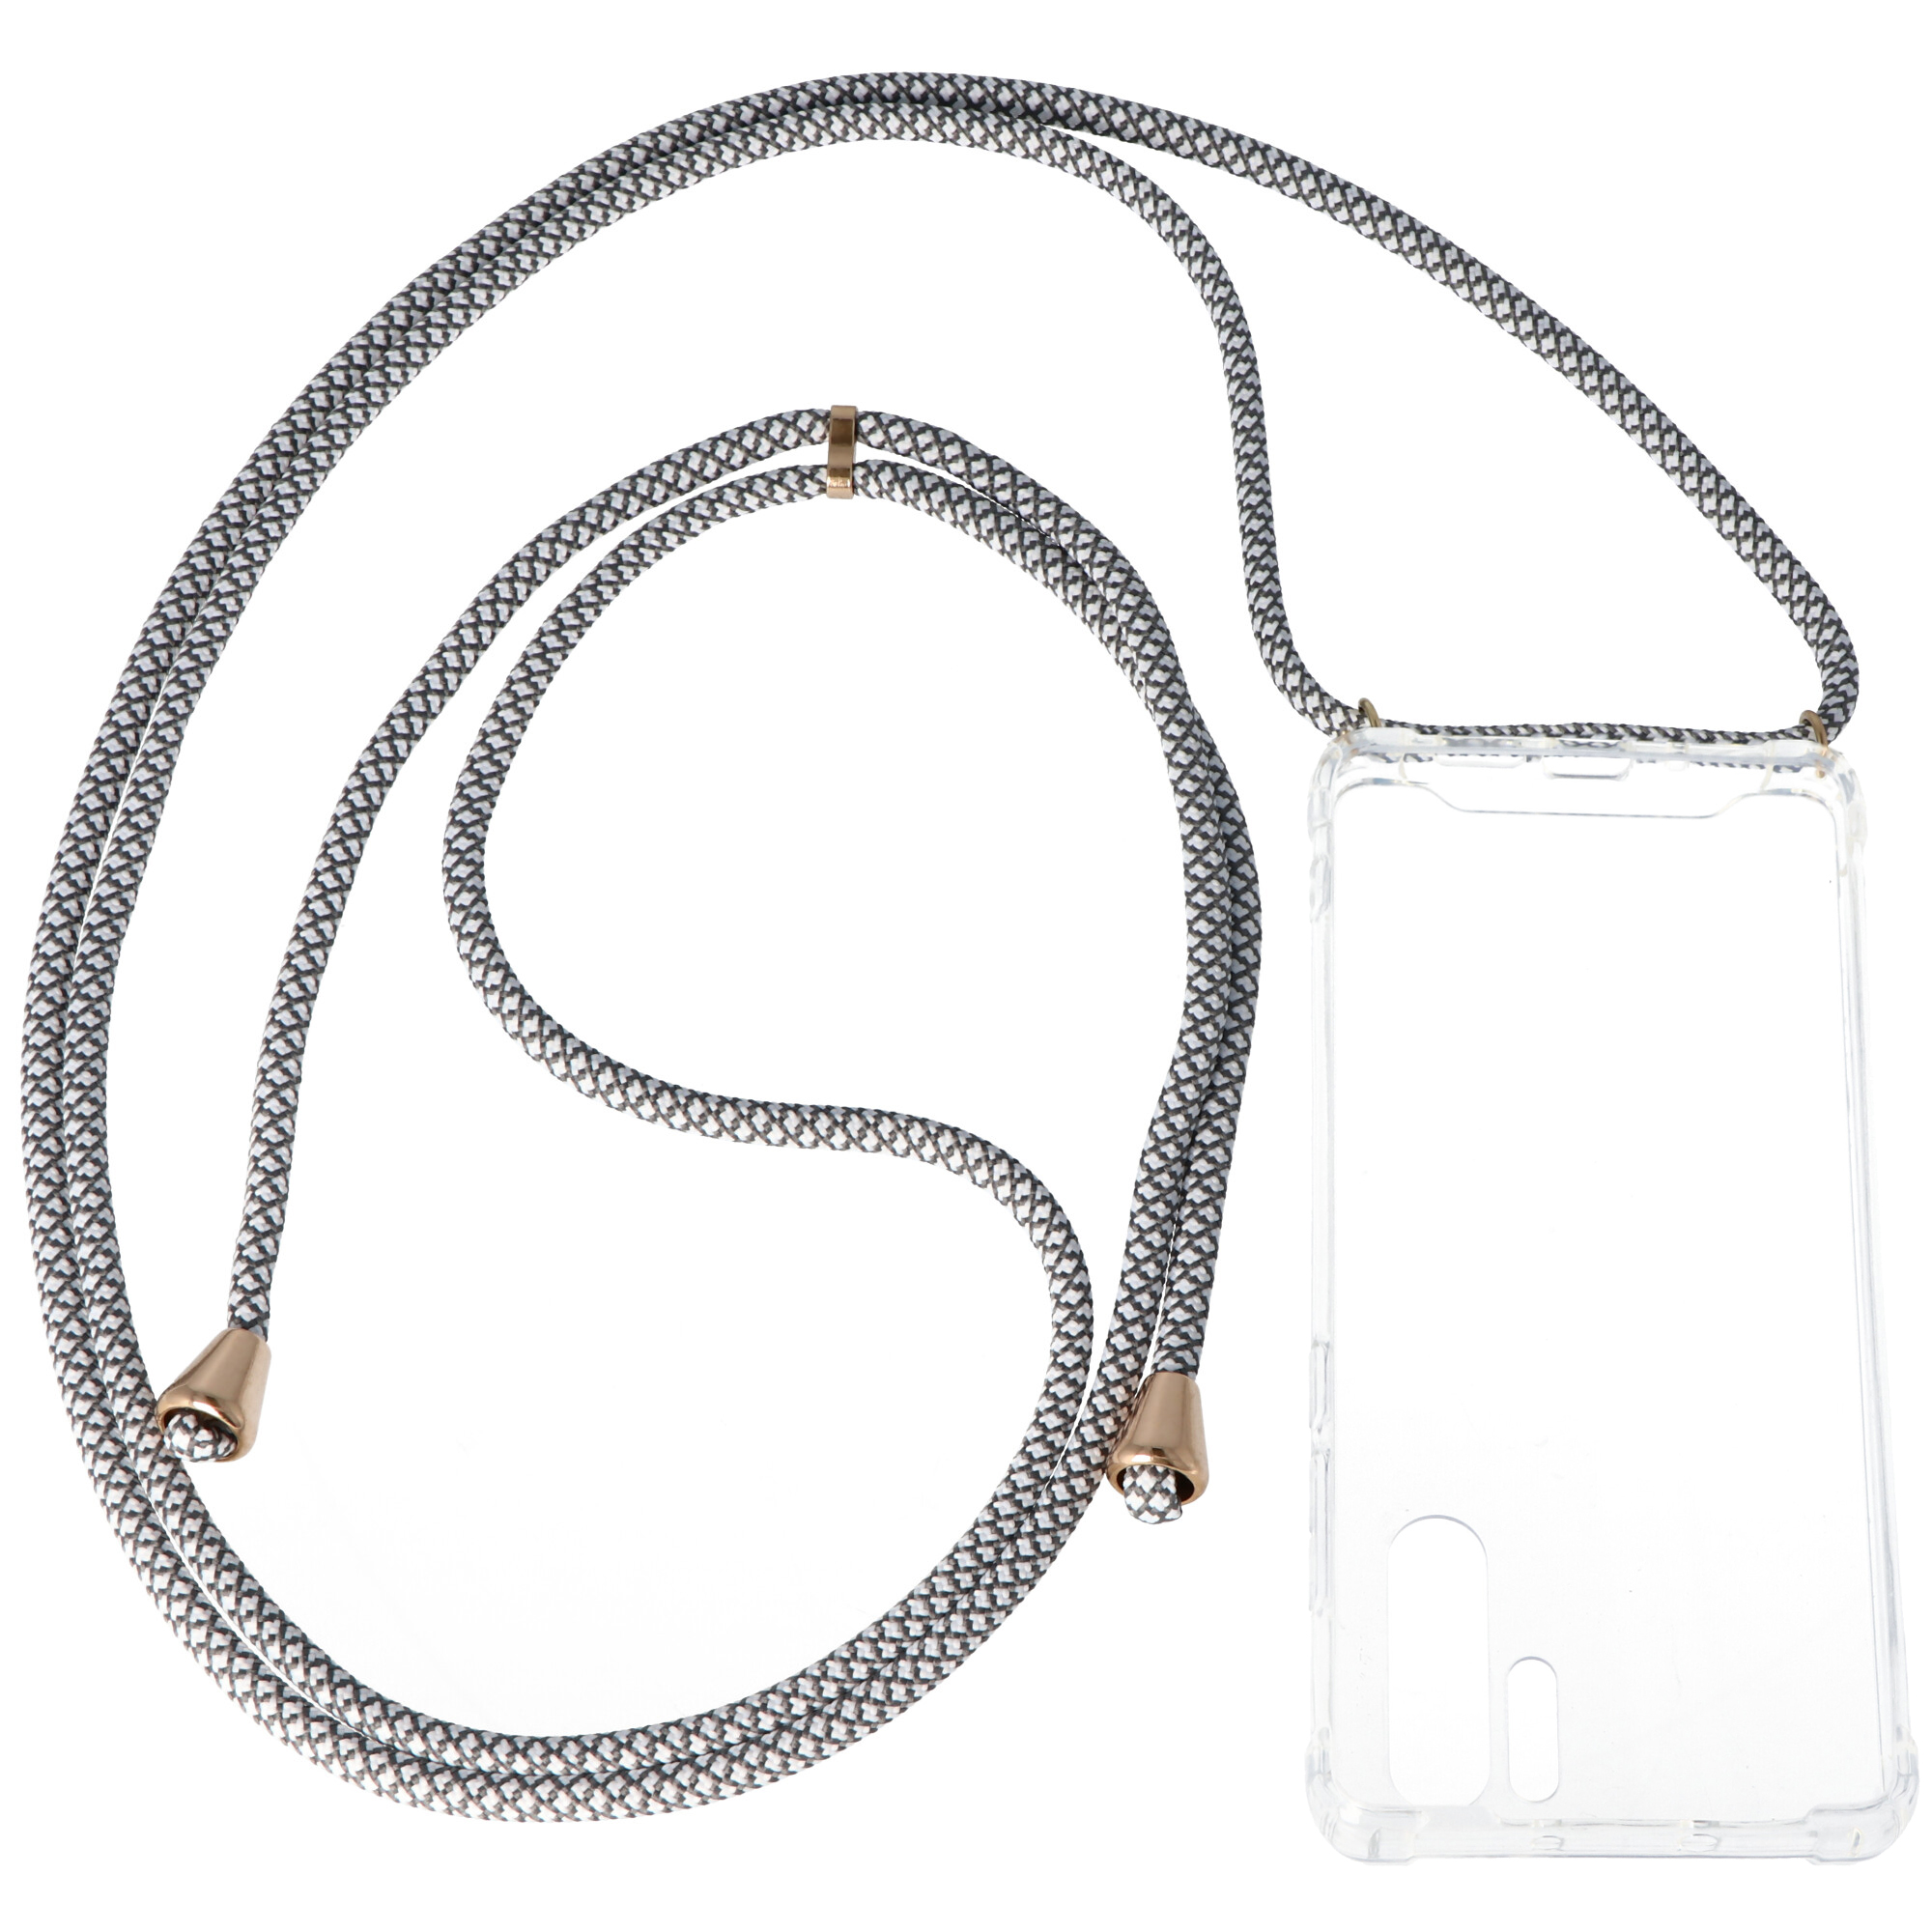 Necklace Case passend für Huawei P30 PRO, Smartphonehülle mit Kordel grau,weiß zum Umhängen